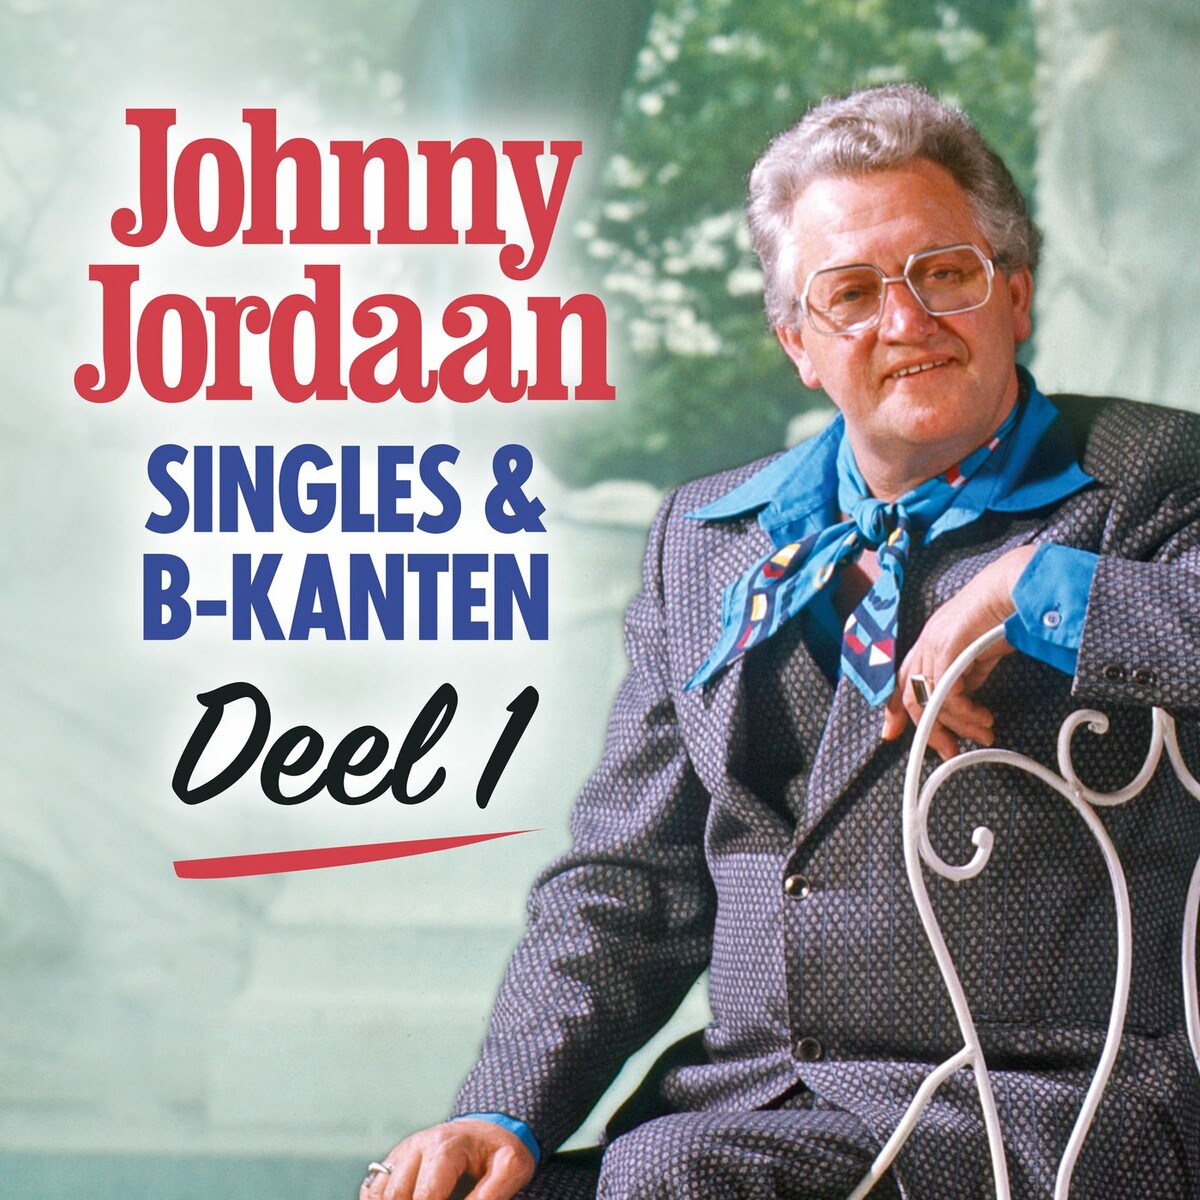 Johnny Jordaan - Singles & B-kanten (Deel 1) (2022)